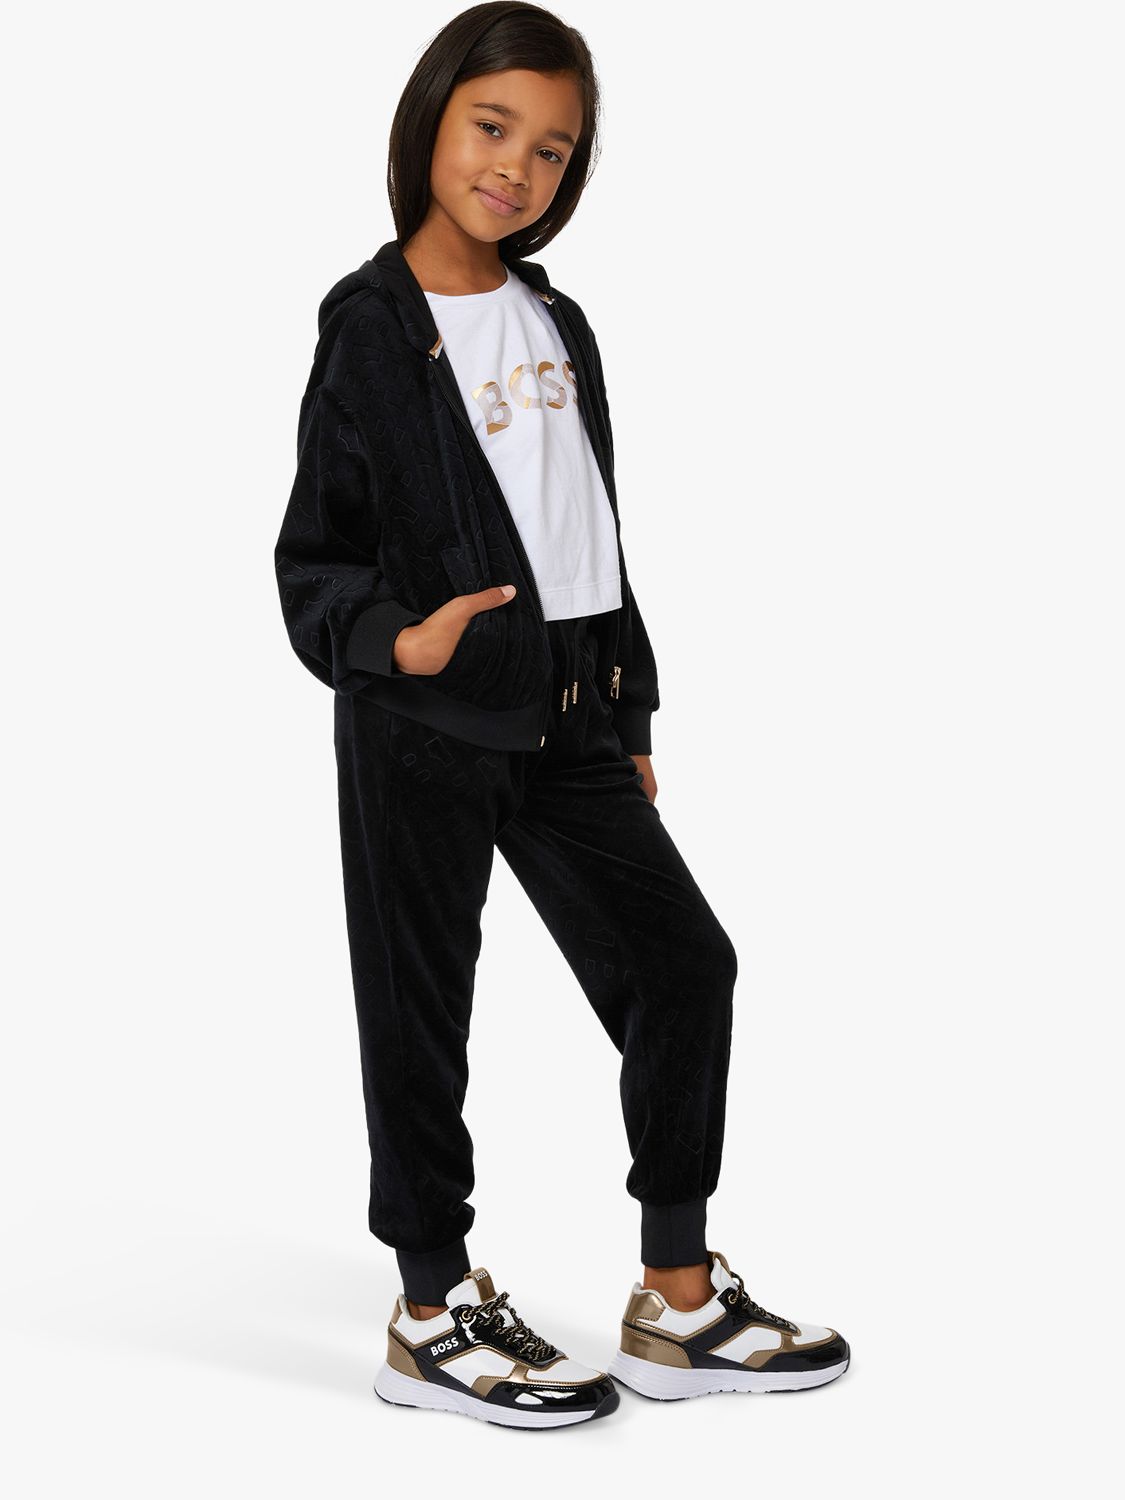 BOSS Kids' Embossed 'B' Logo Velvet Trousers, Black, 4 years